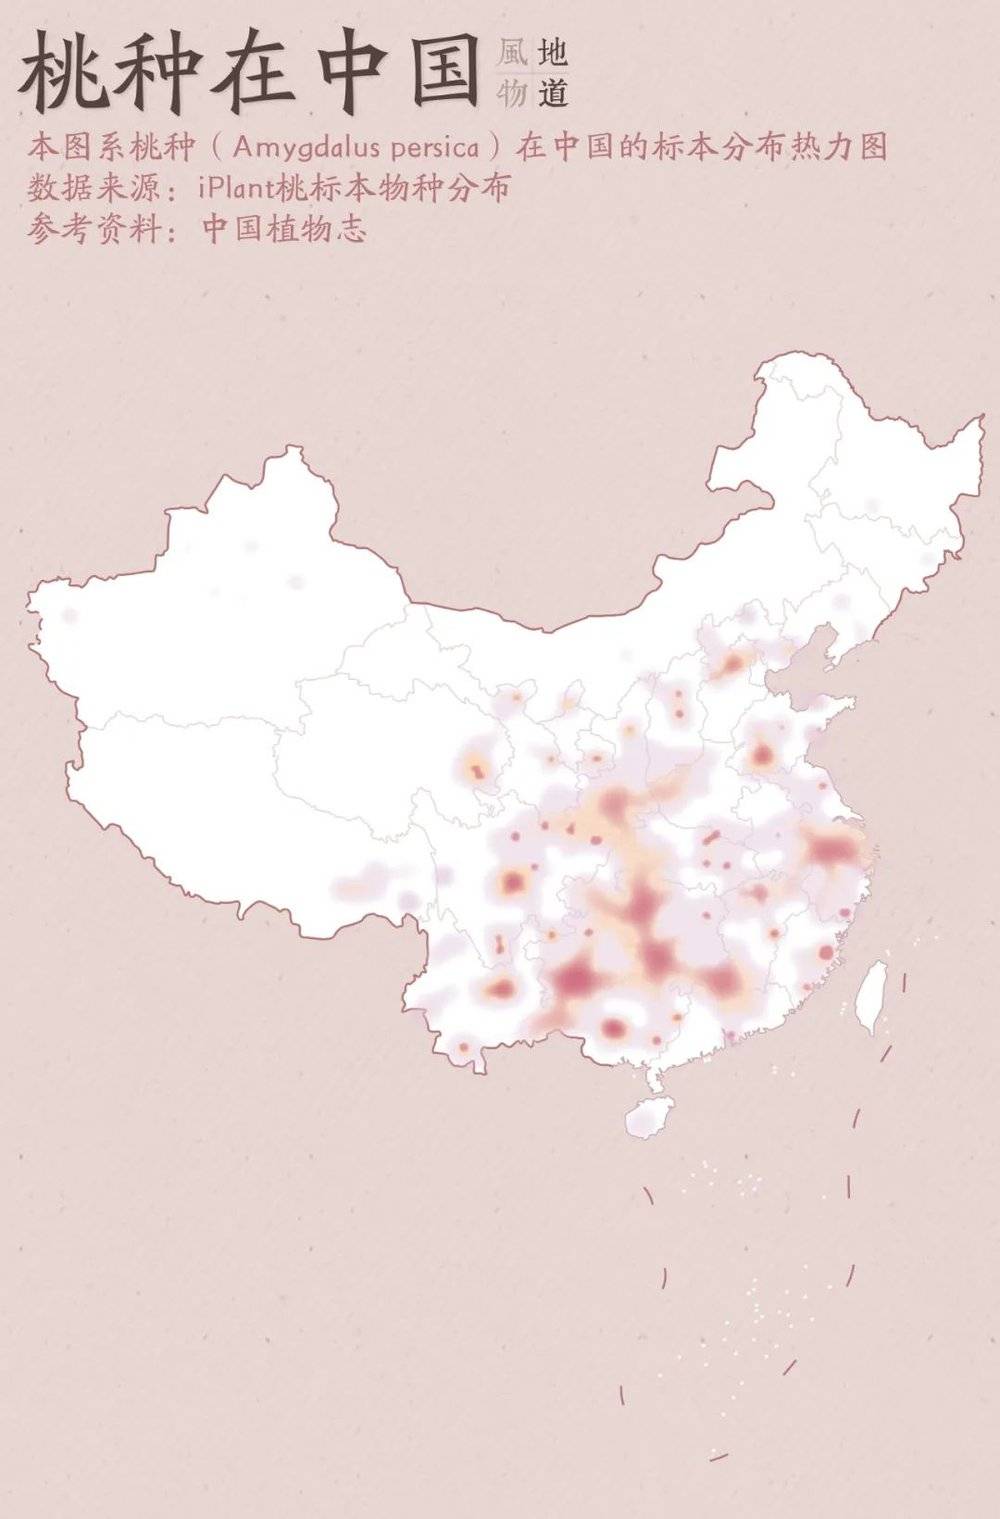 中国地图轮廓图简化图片